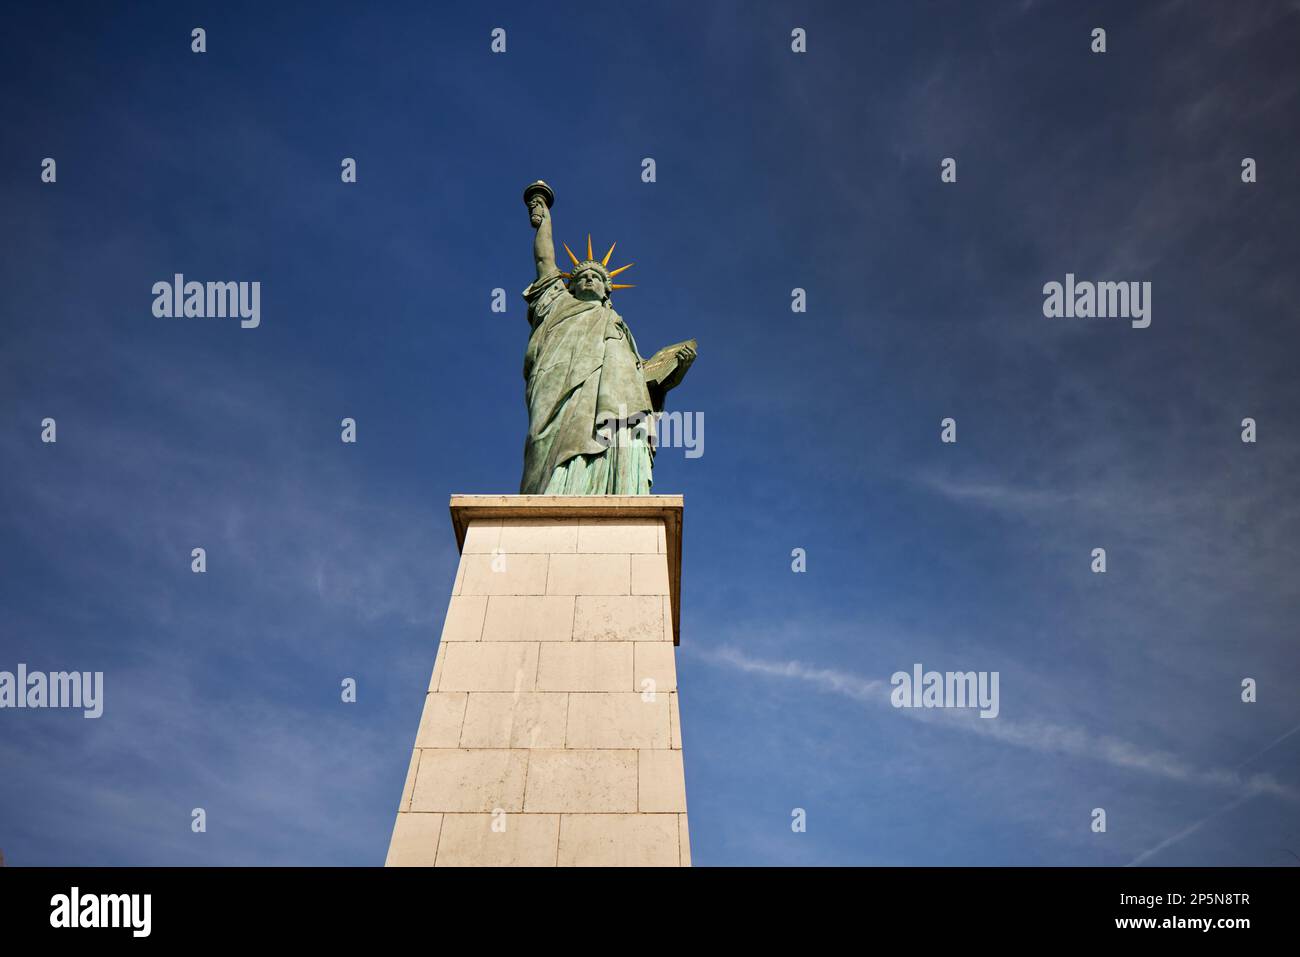 Monument de Paris, Statue de la liberté sur l'Île aux Cygnes, Seine à Paris. Donné à la ville en 1889 Banque D'Images